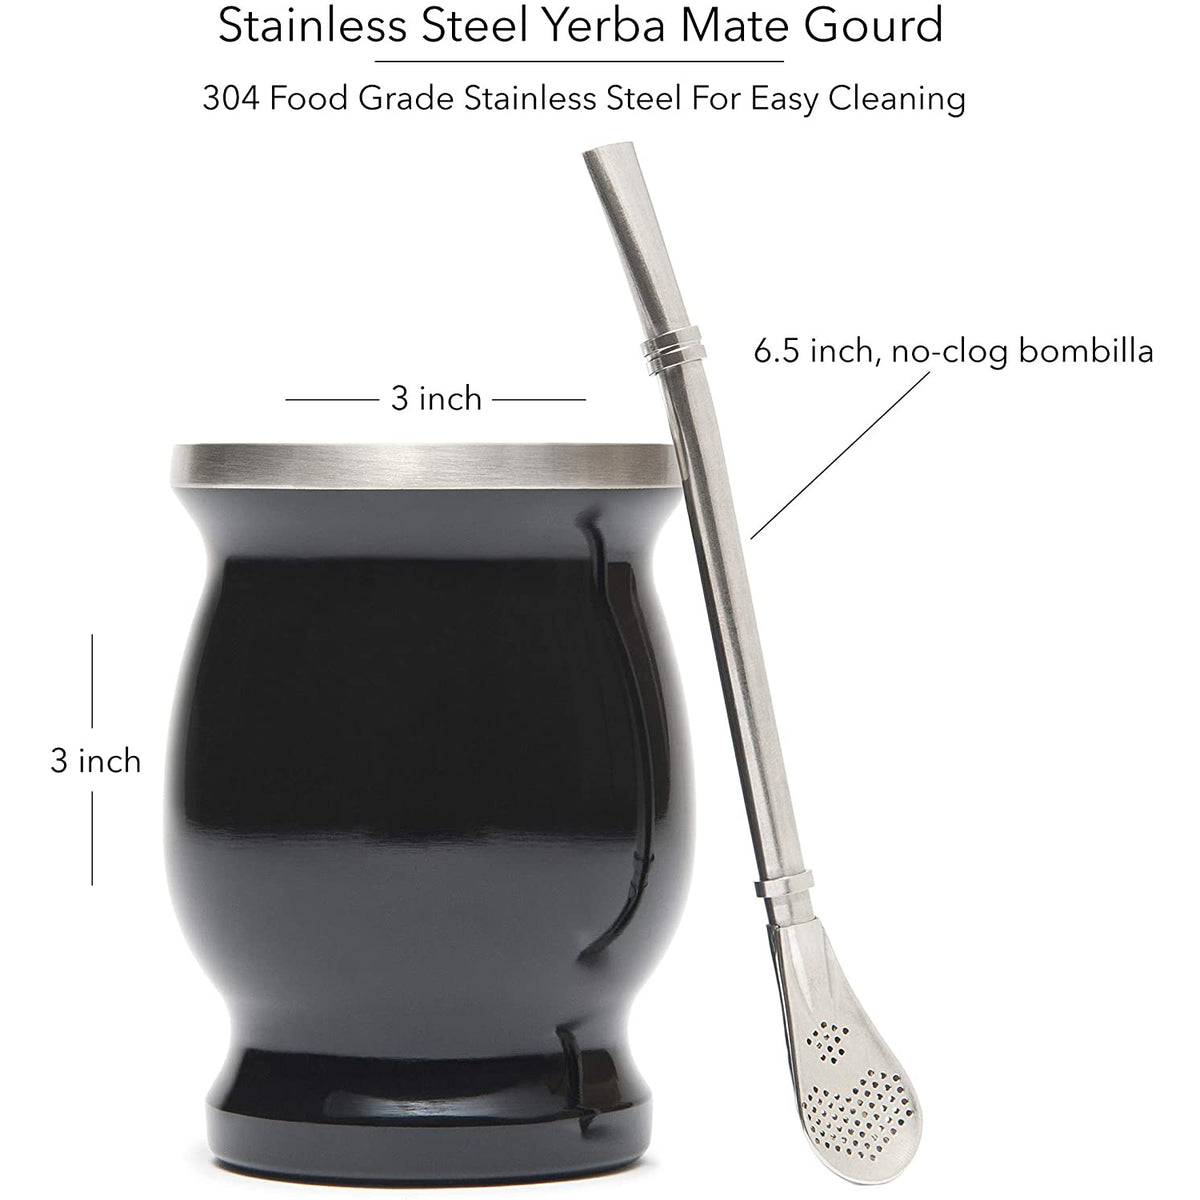 Mate Gourd Modern Vacuum Stainless Steel Yerba Mate Cup Set